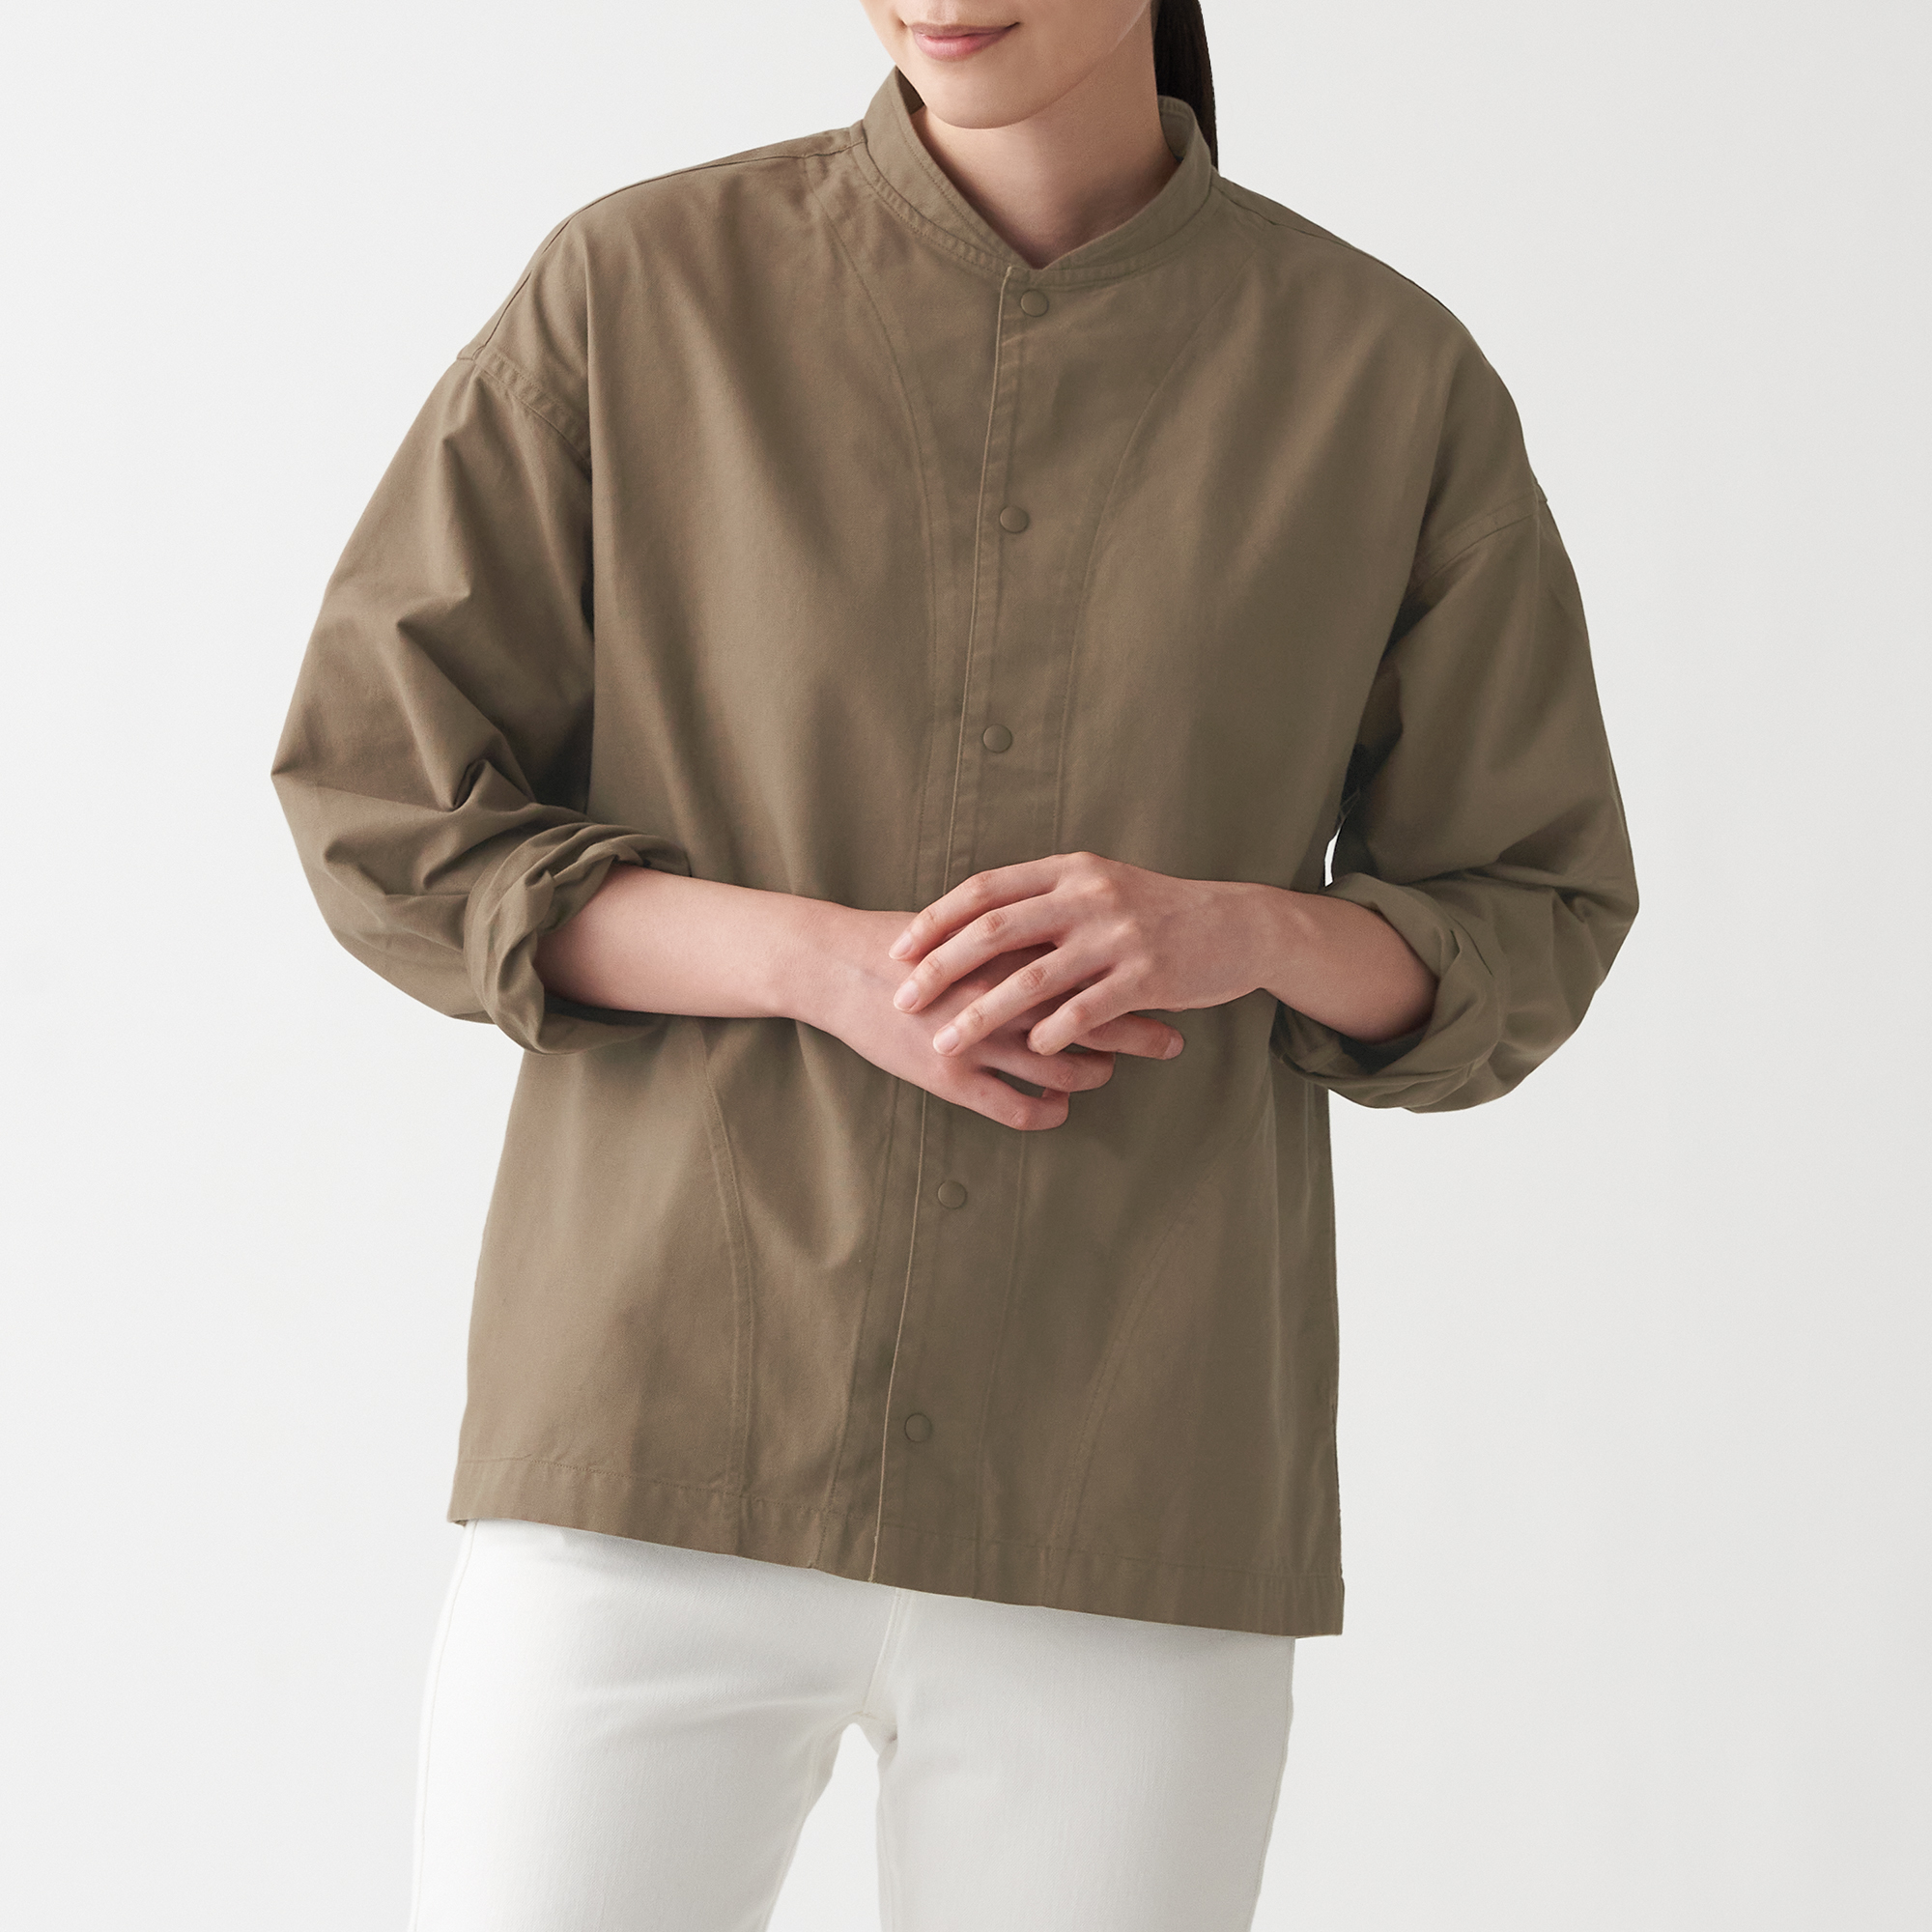 มูจิ เสื้อเชิ้ตผ้าออกซฟอร์ตฟอก ปกตั้ง Unisex - MUJI Washed Oxford Stand Collar Shirt สี น้ำตาลมอคค่า ขนาด L|XL